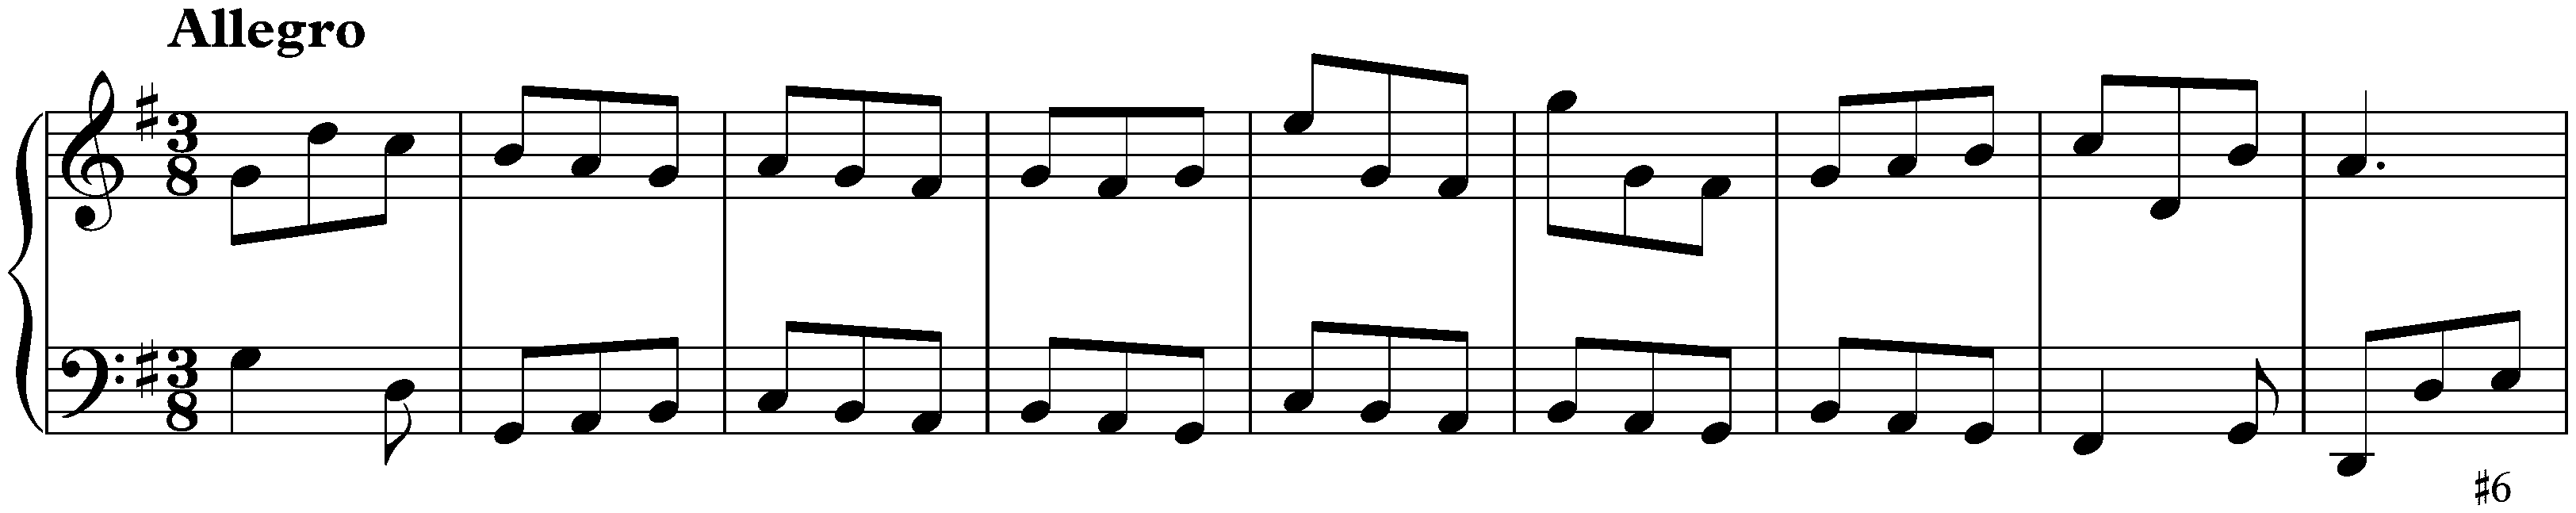 Sonata in G major, K. 91; 4. Allegro